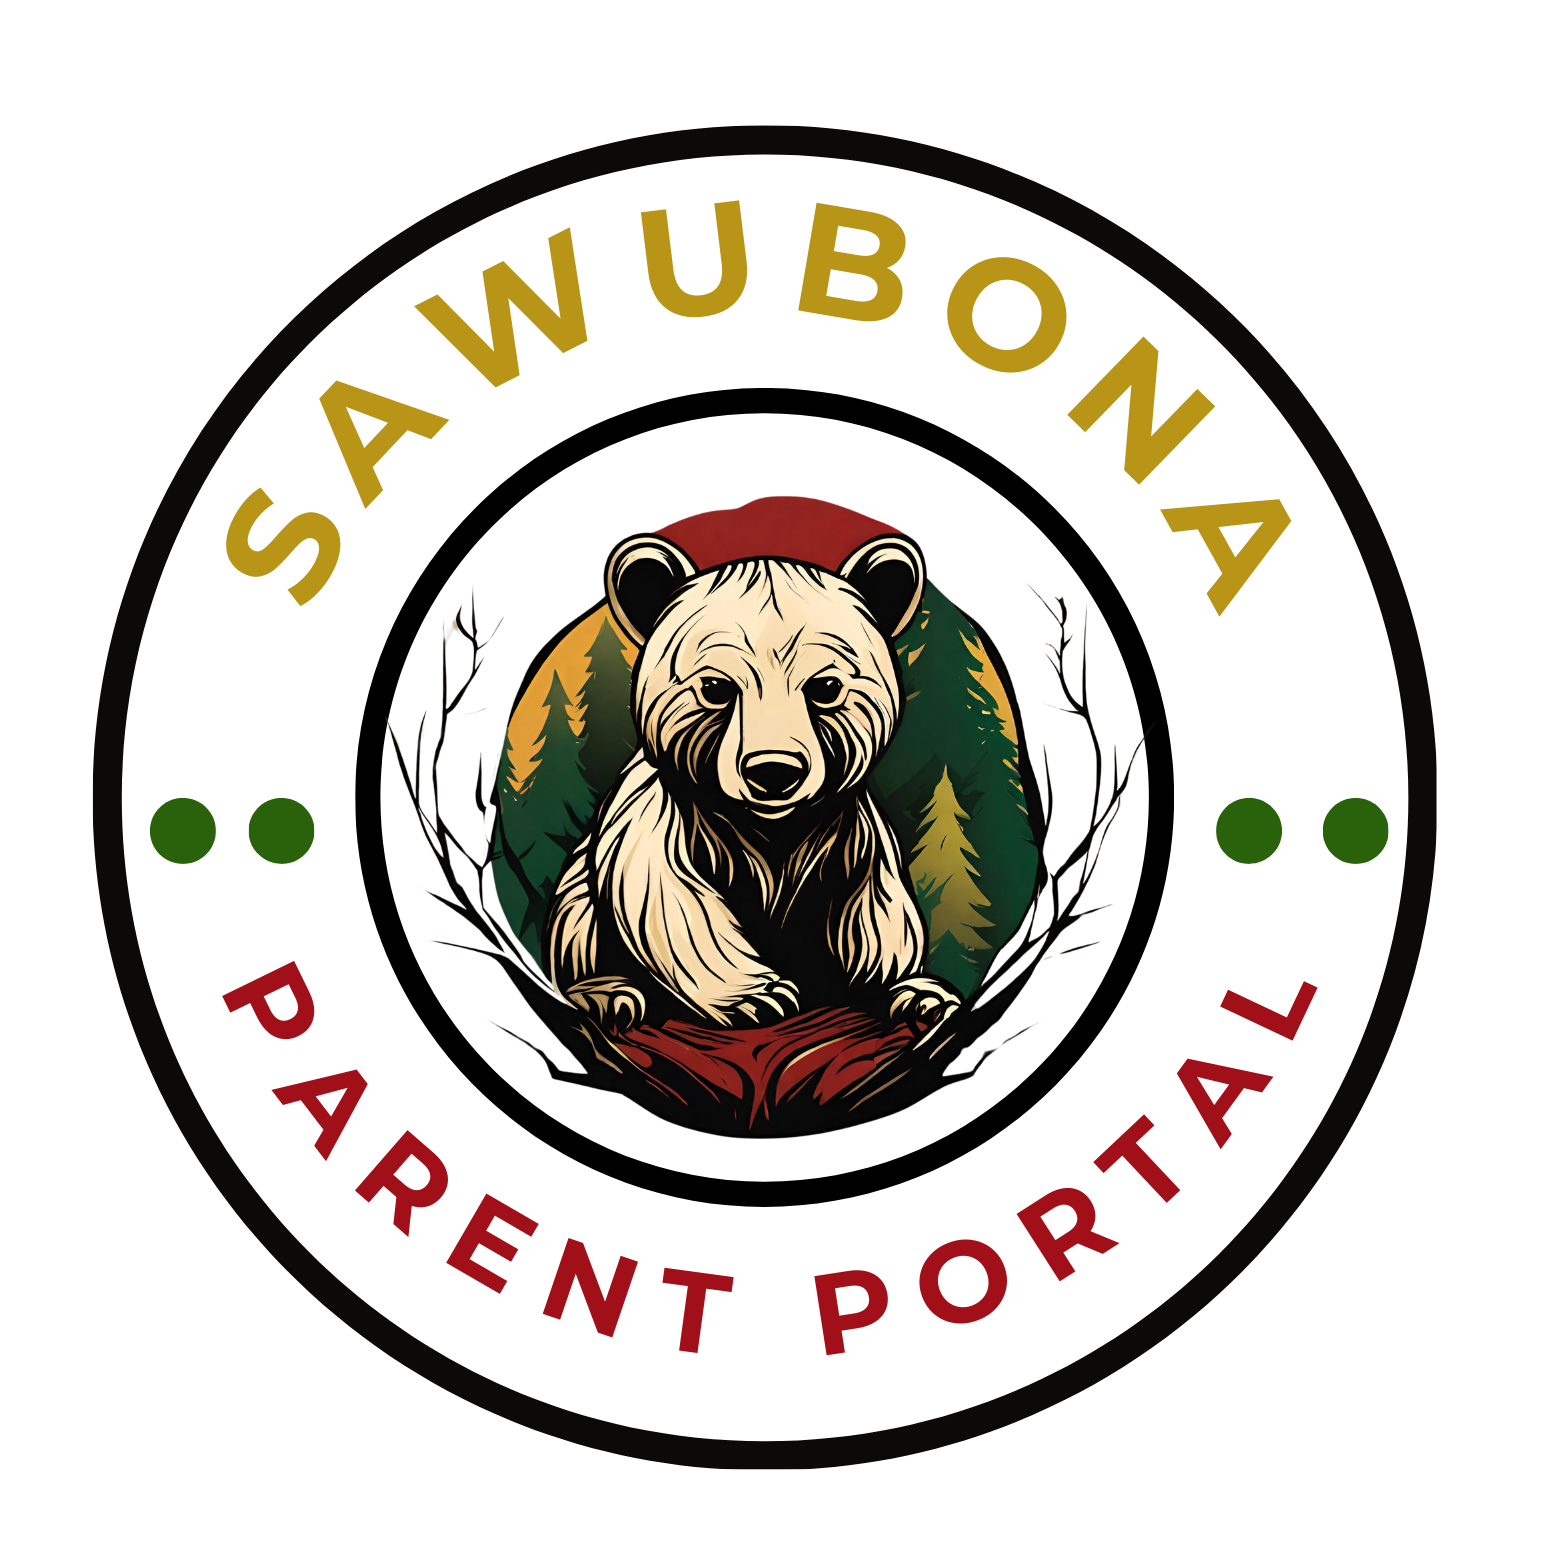 Image of Bear Cub- says Sawubona Parent Portal 